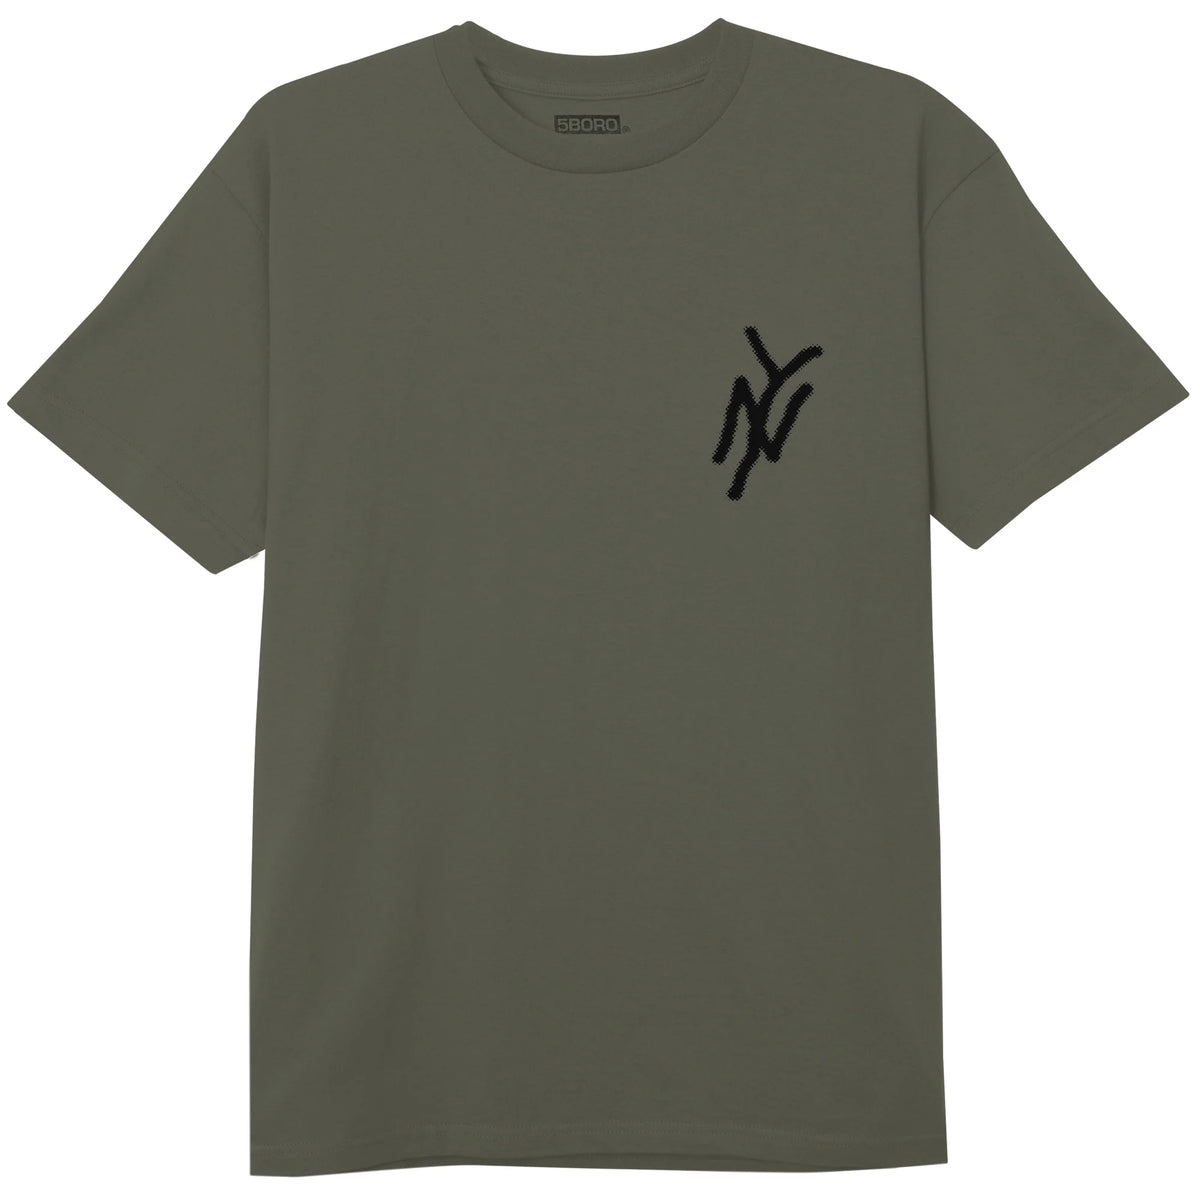 5Boro NY Logo Tee Olive/Black Tee Black Logo Short sleeve